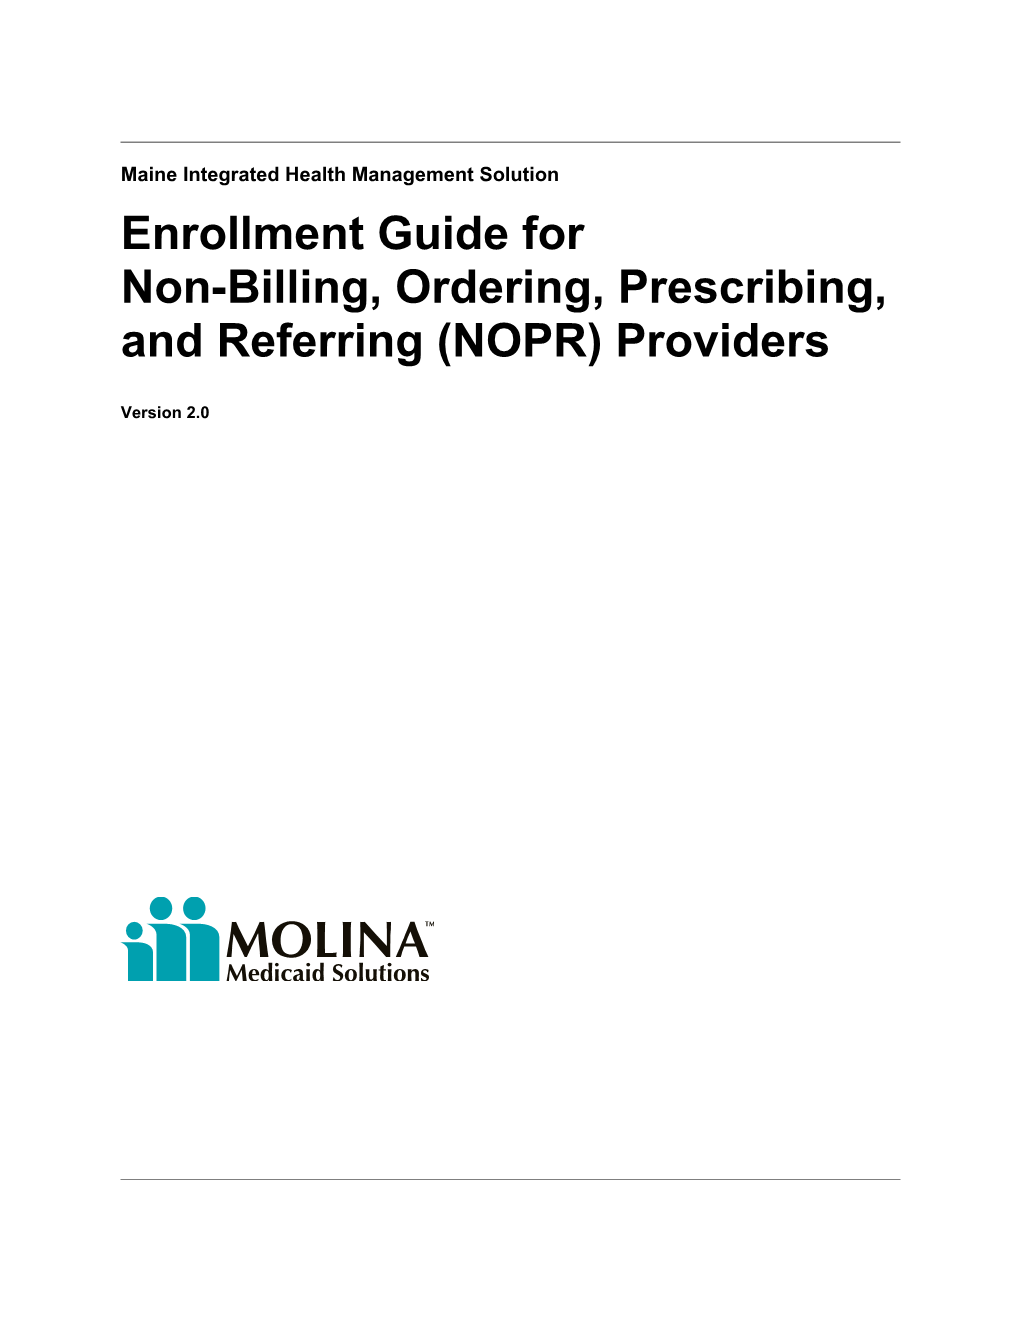 Enrollment Guide for NOPR Providers